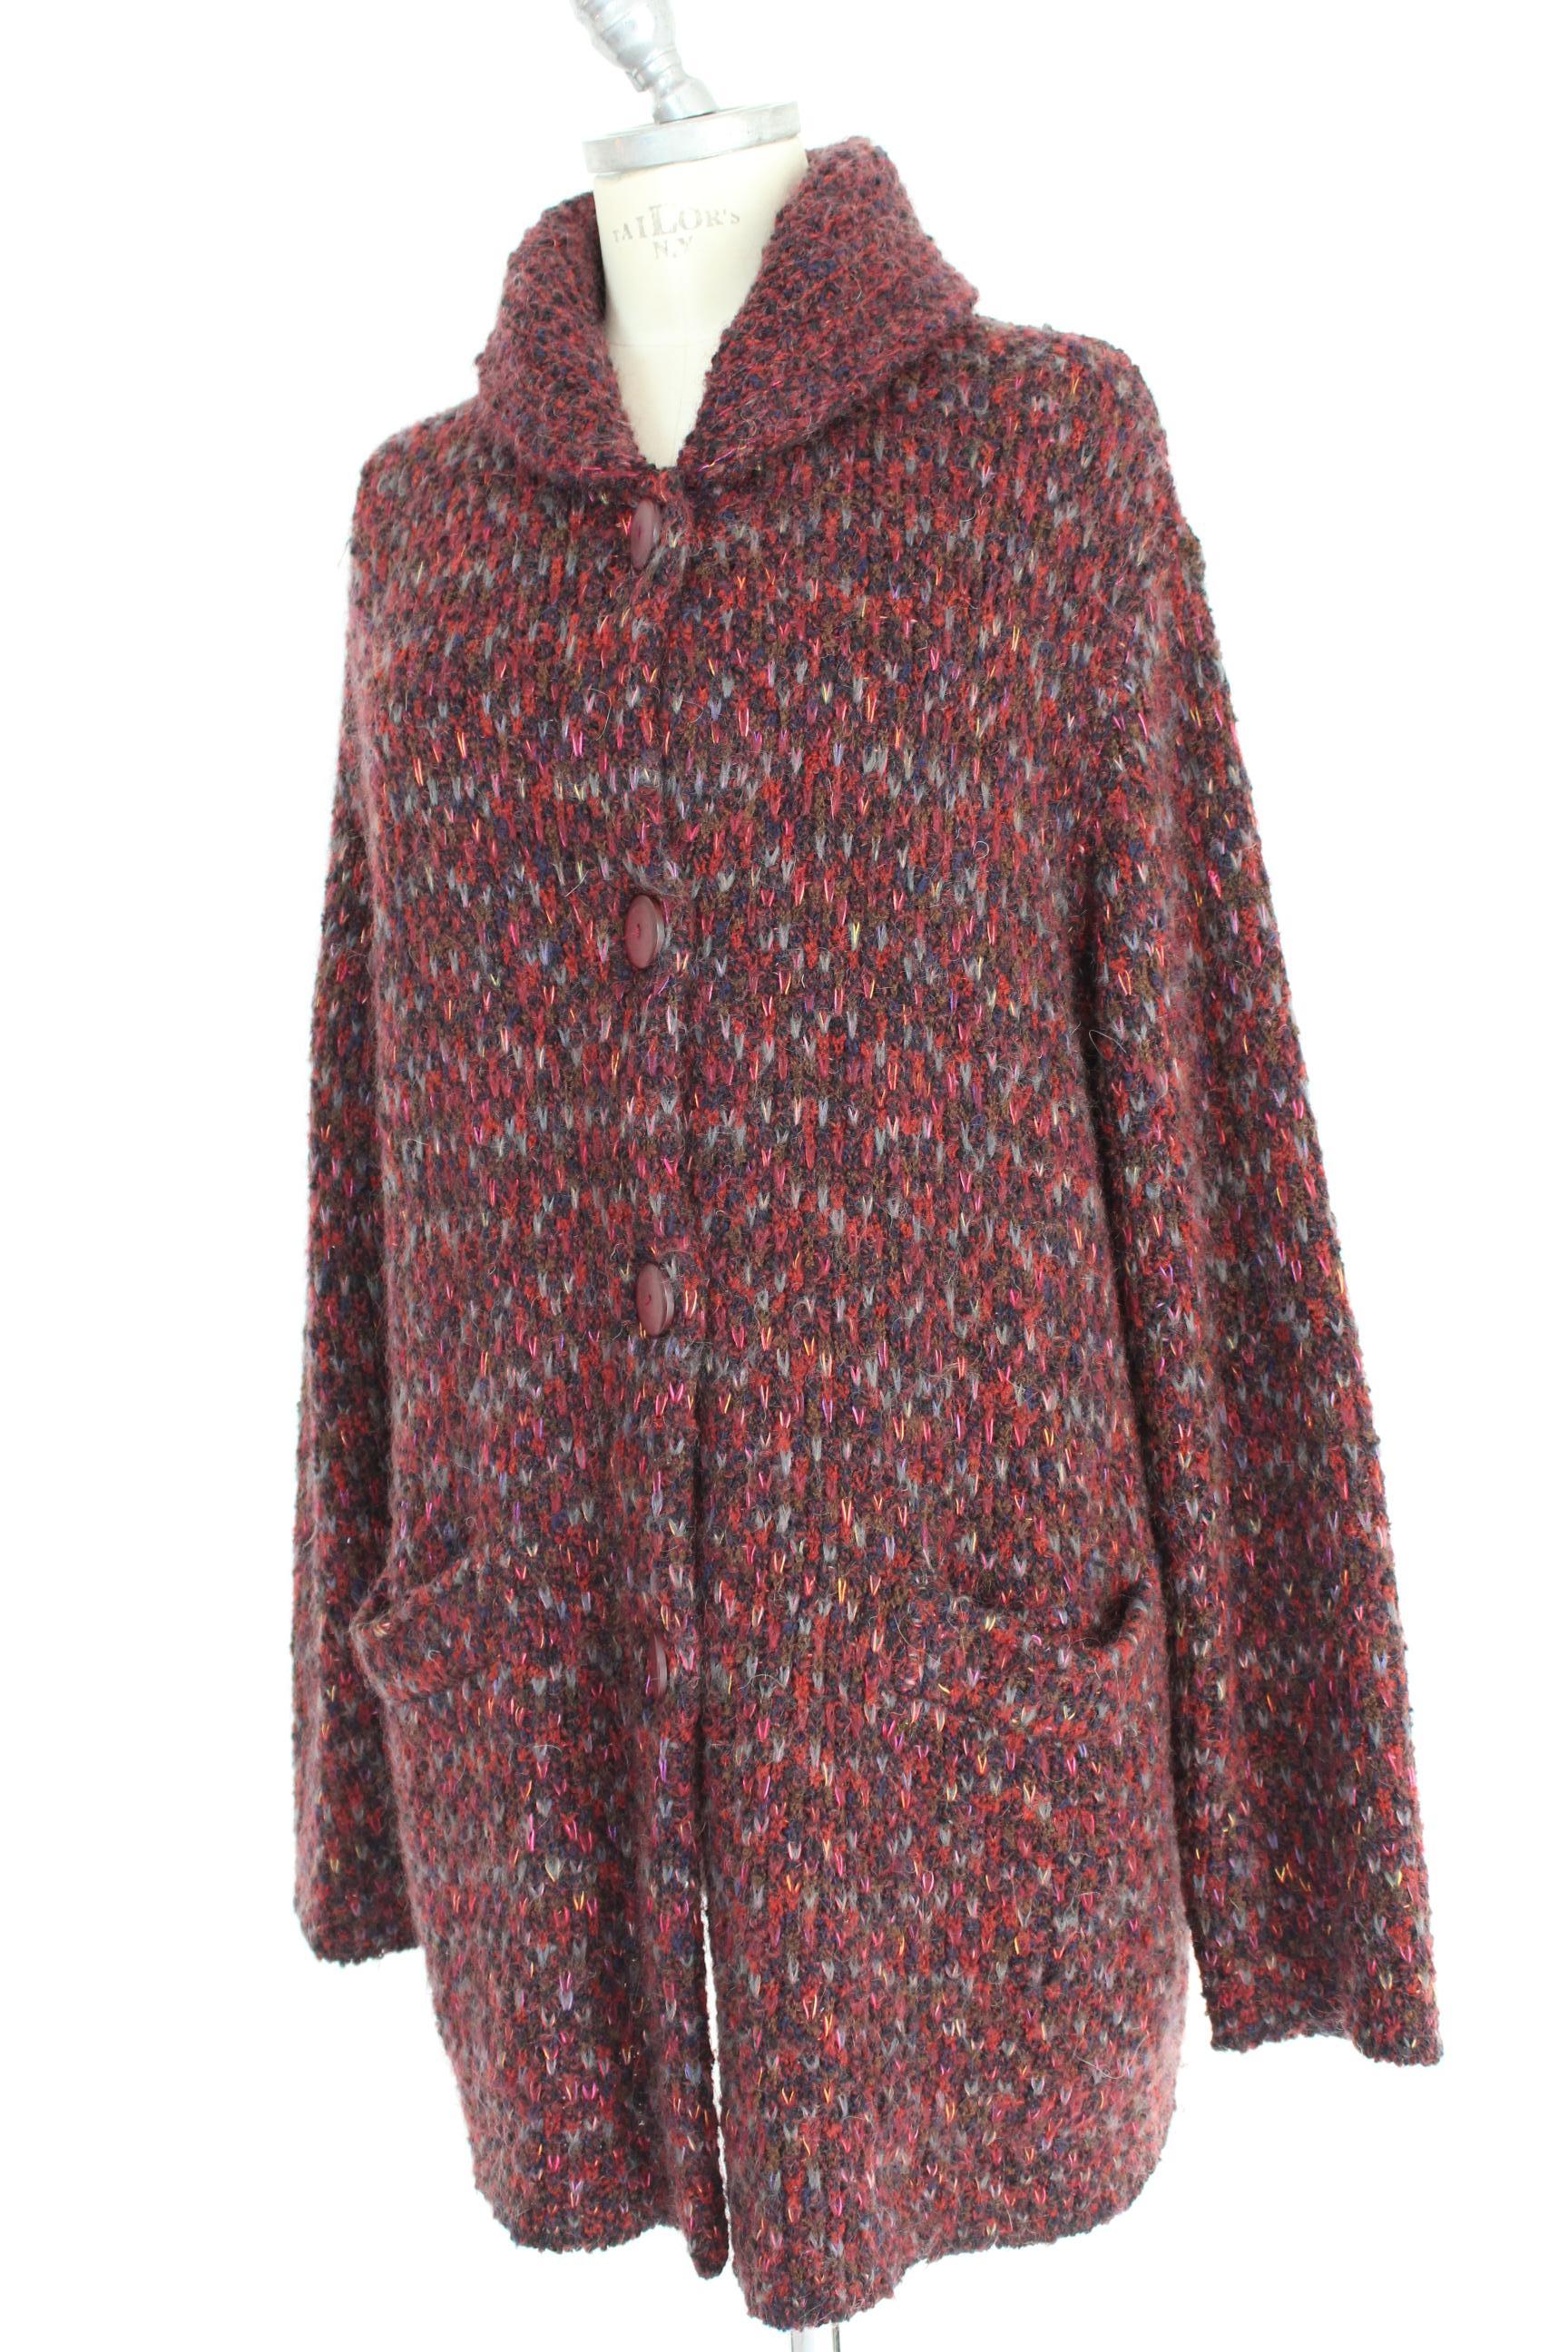 Missoni Red Brown Alpaca Wool Mohair Tweed Jacket 1990s  1